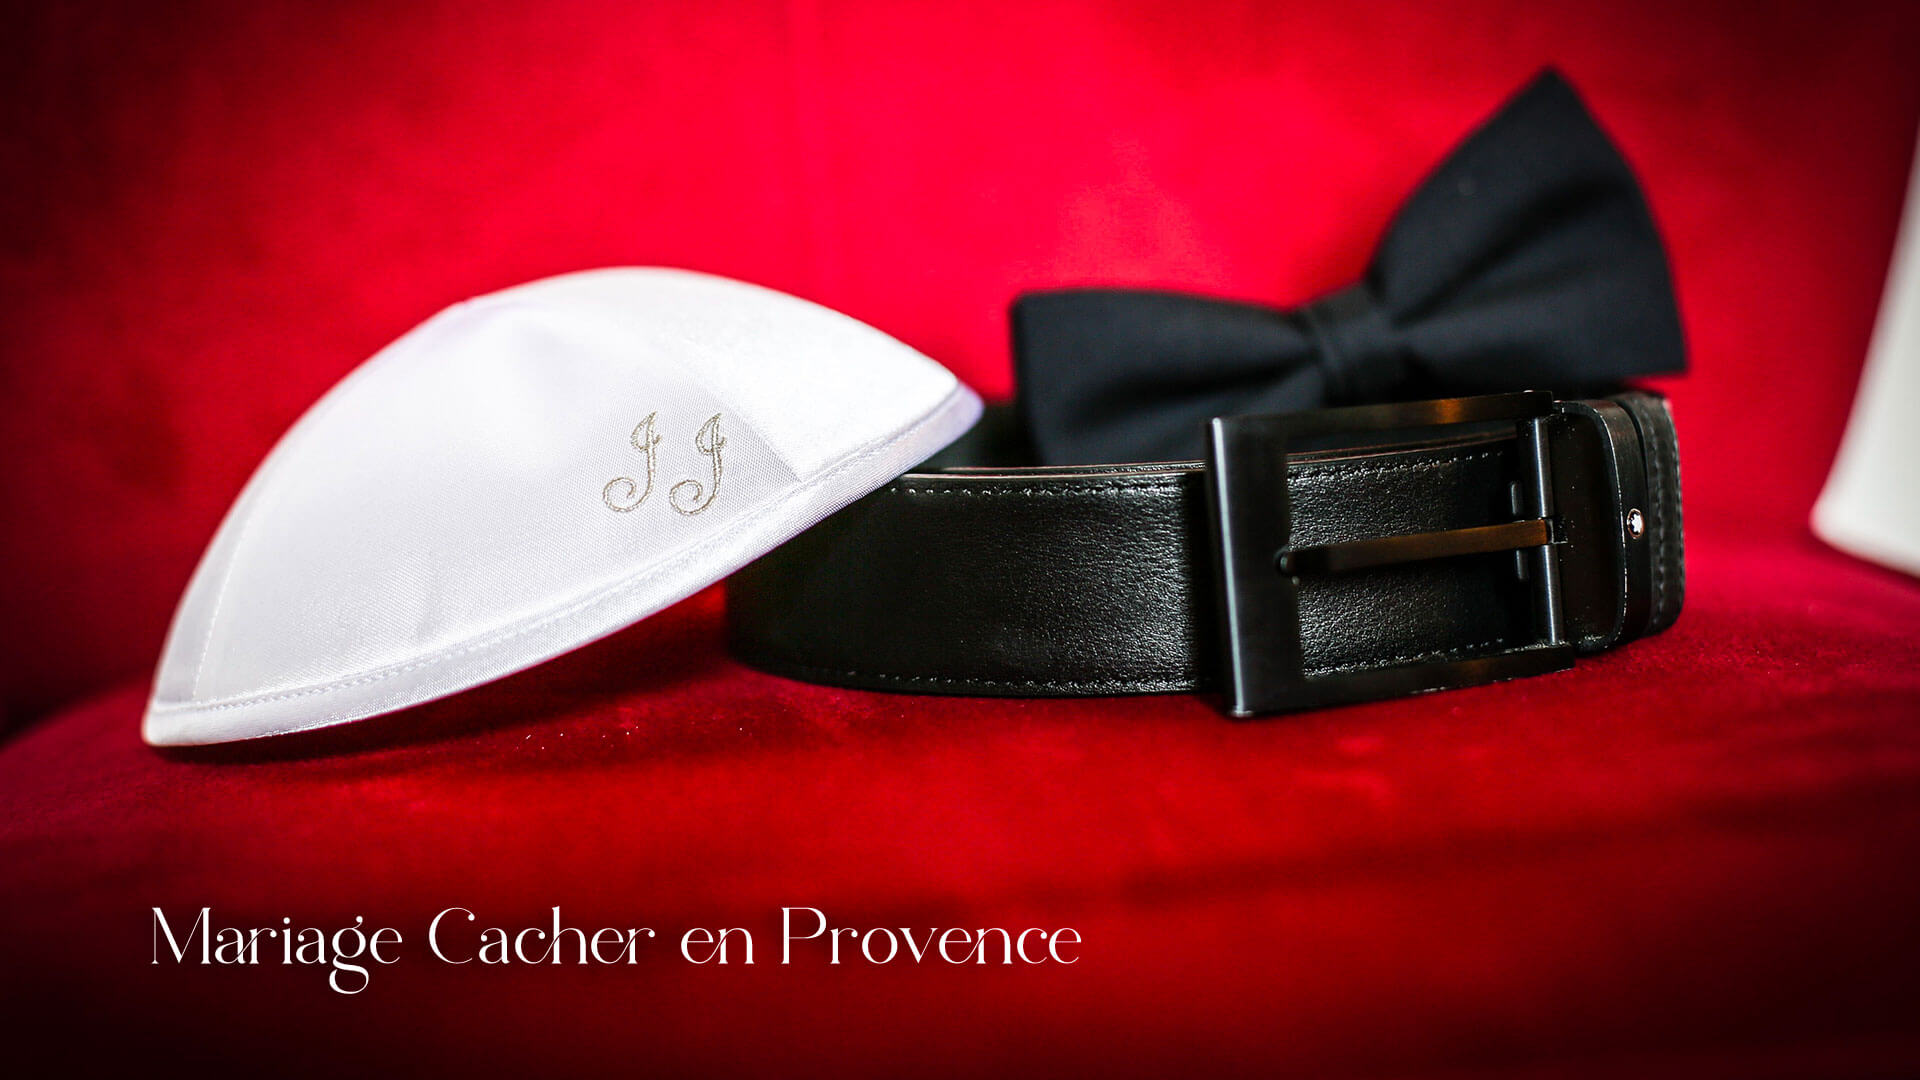 Contraintes à respecter pour un mariage cacher - Mariage Cacher en Provence